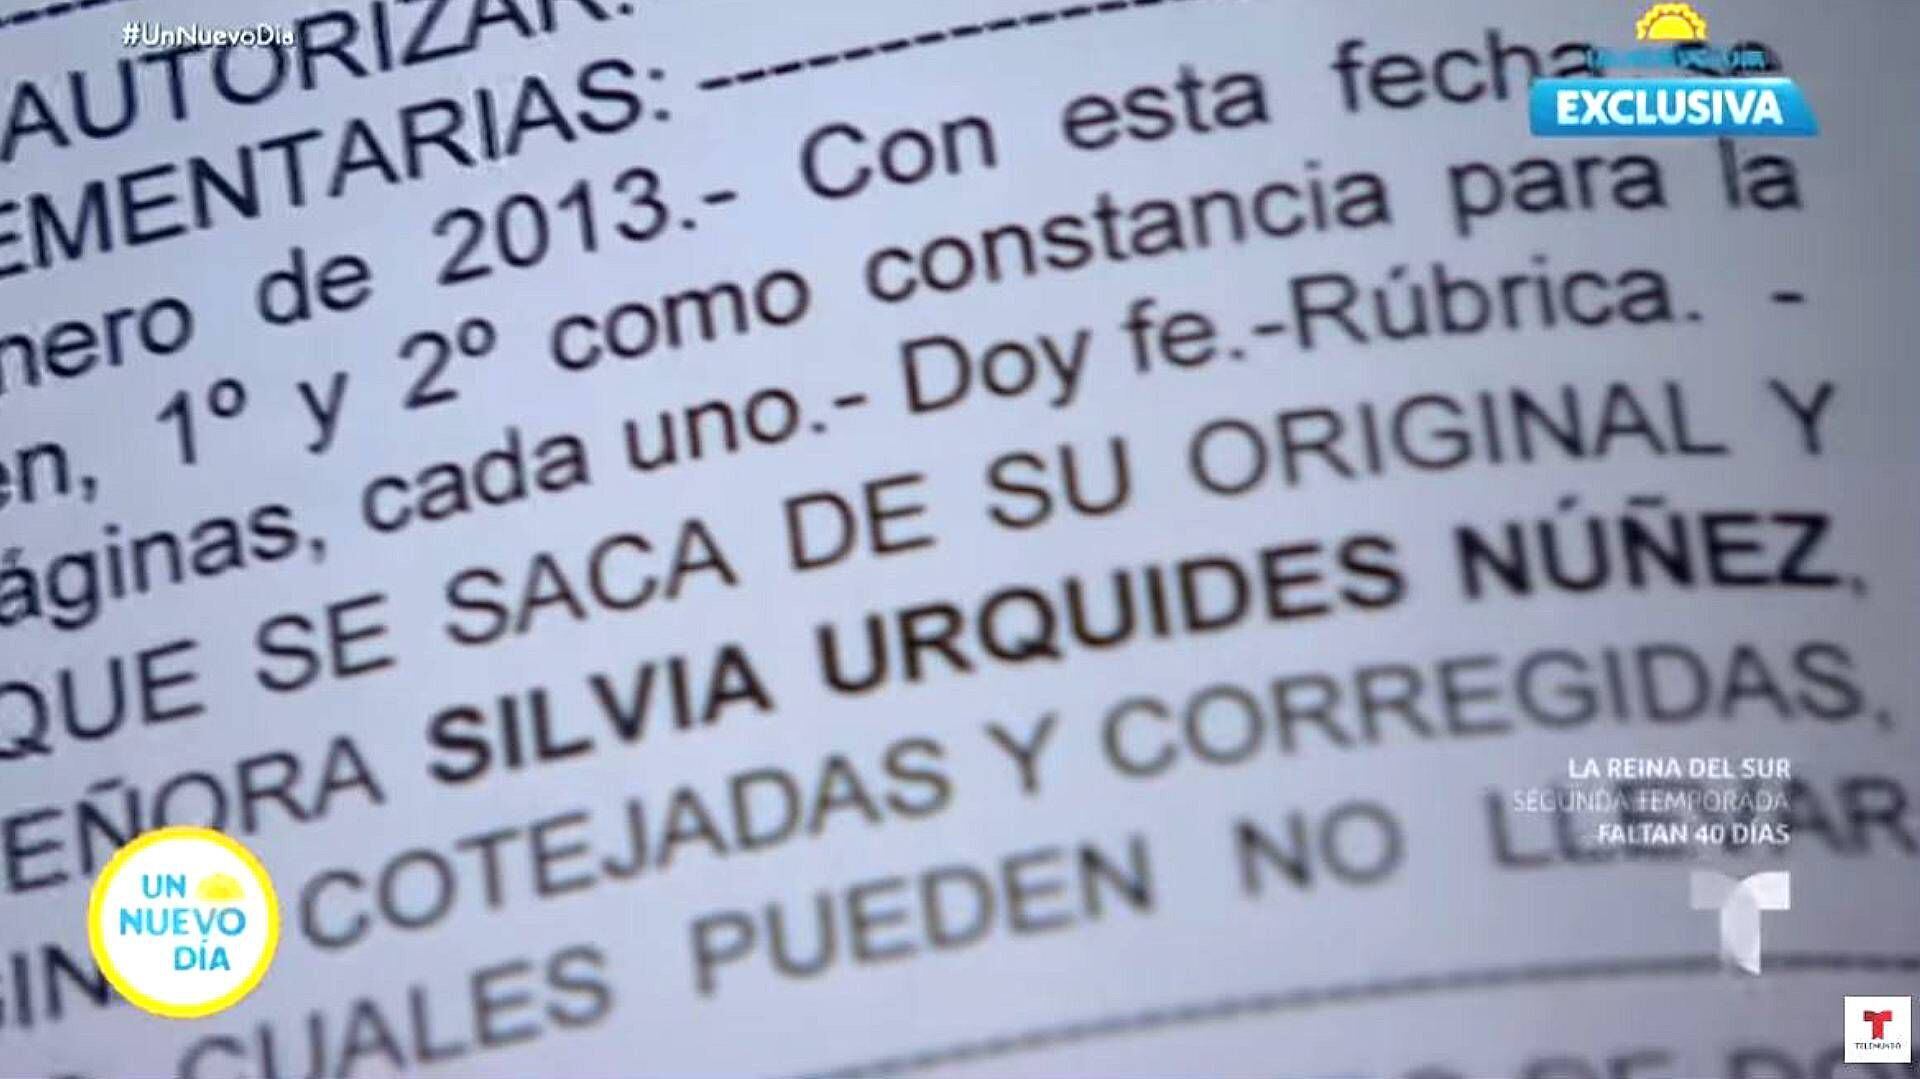 El nombre de Silvia Urquidi en los documentos la ampara (Foto: Telemundo/YouTube)